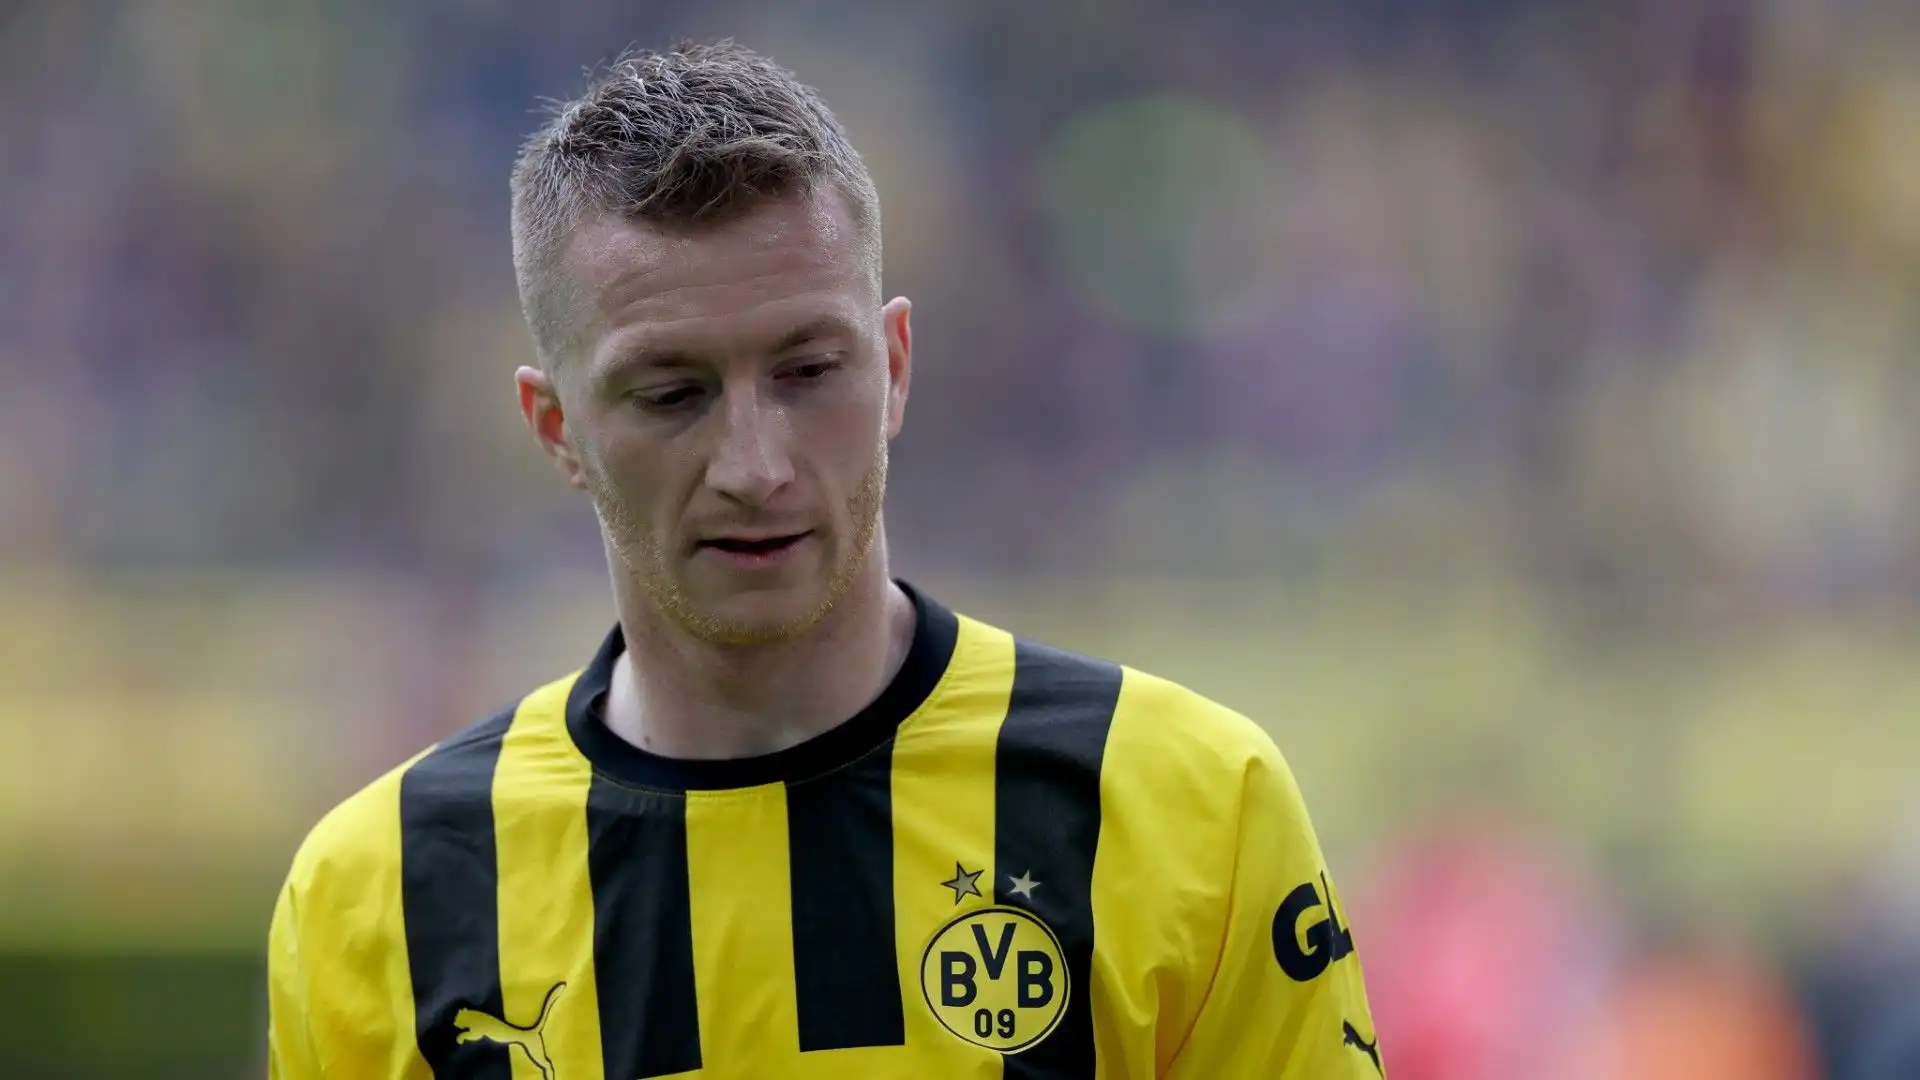 L'attaccante tedesco ha deciso di rinnovare il suo contratto con il Borussia Dortmund per un'altra stagione